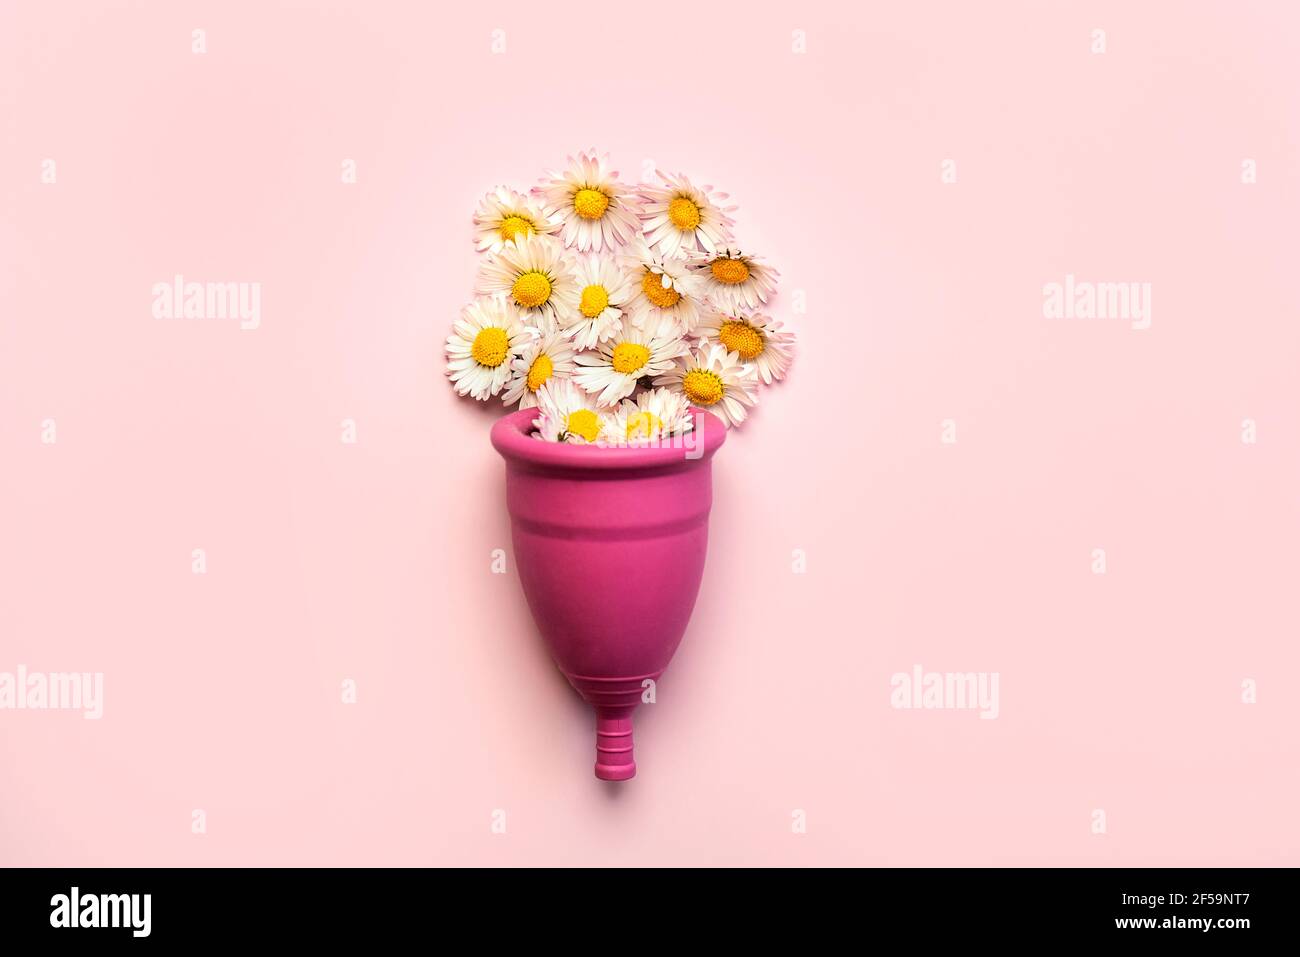 Coppa mestruale in silicone con fiori bianchi a margherita su un rosa Background.Femminile concetto di igiene ginecologica alternativa intima Foto Stock